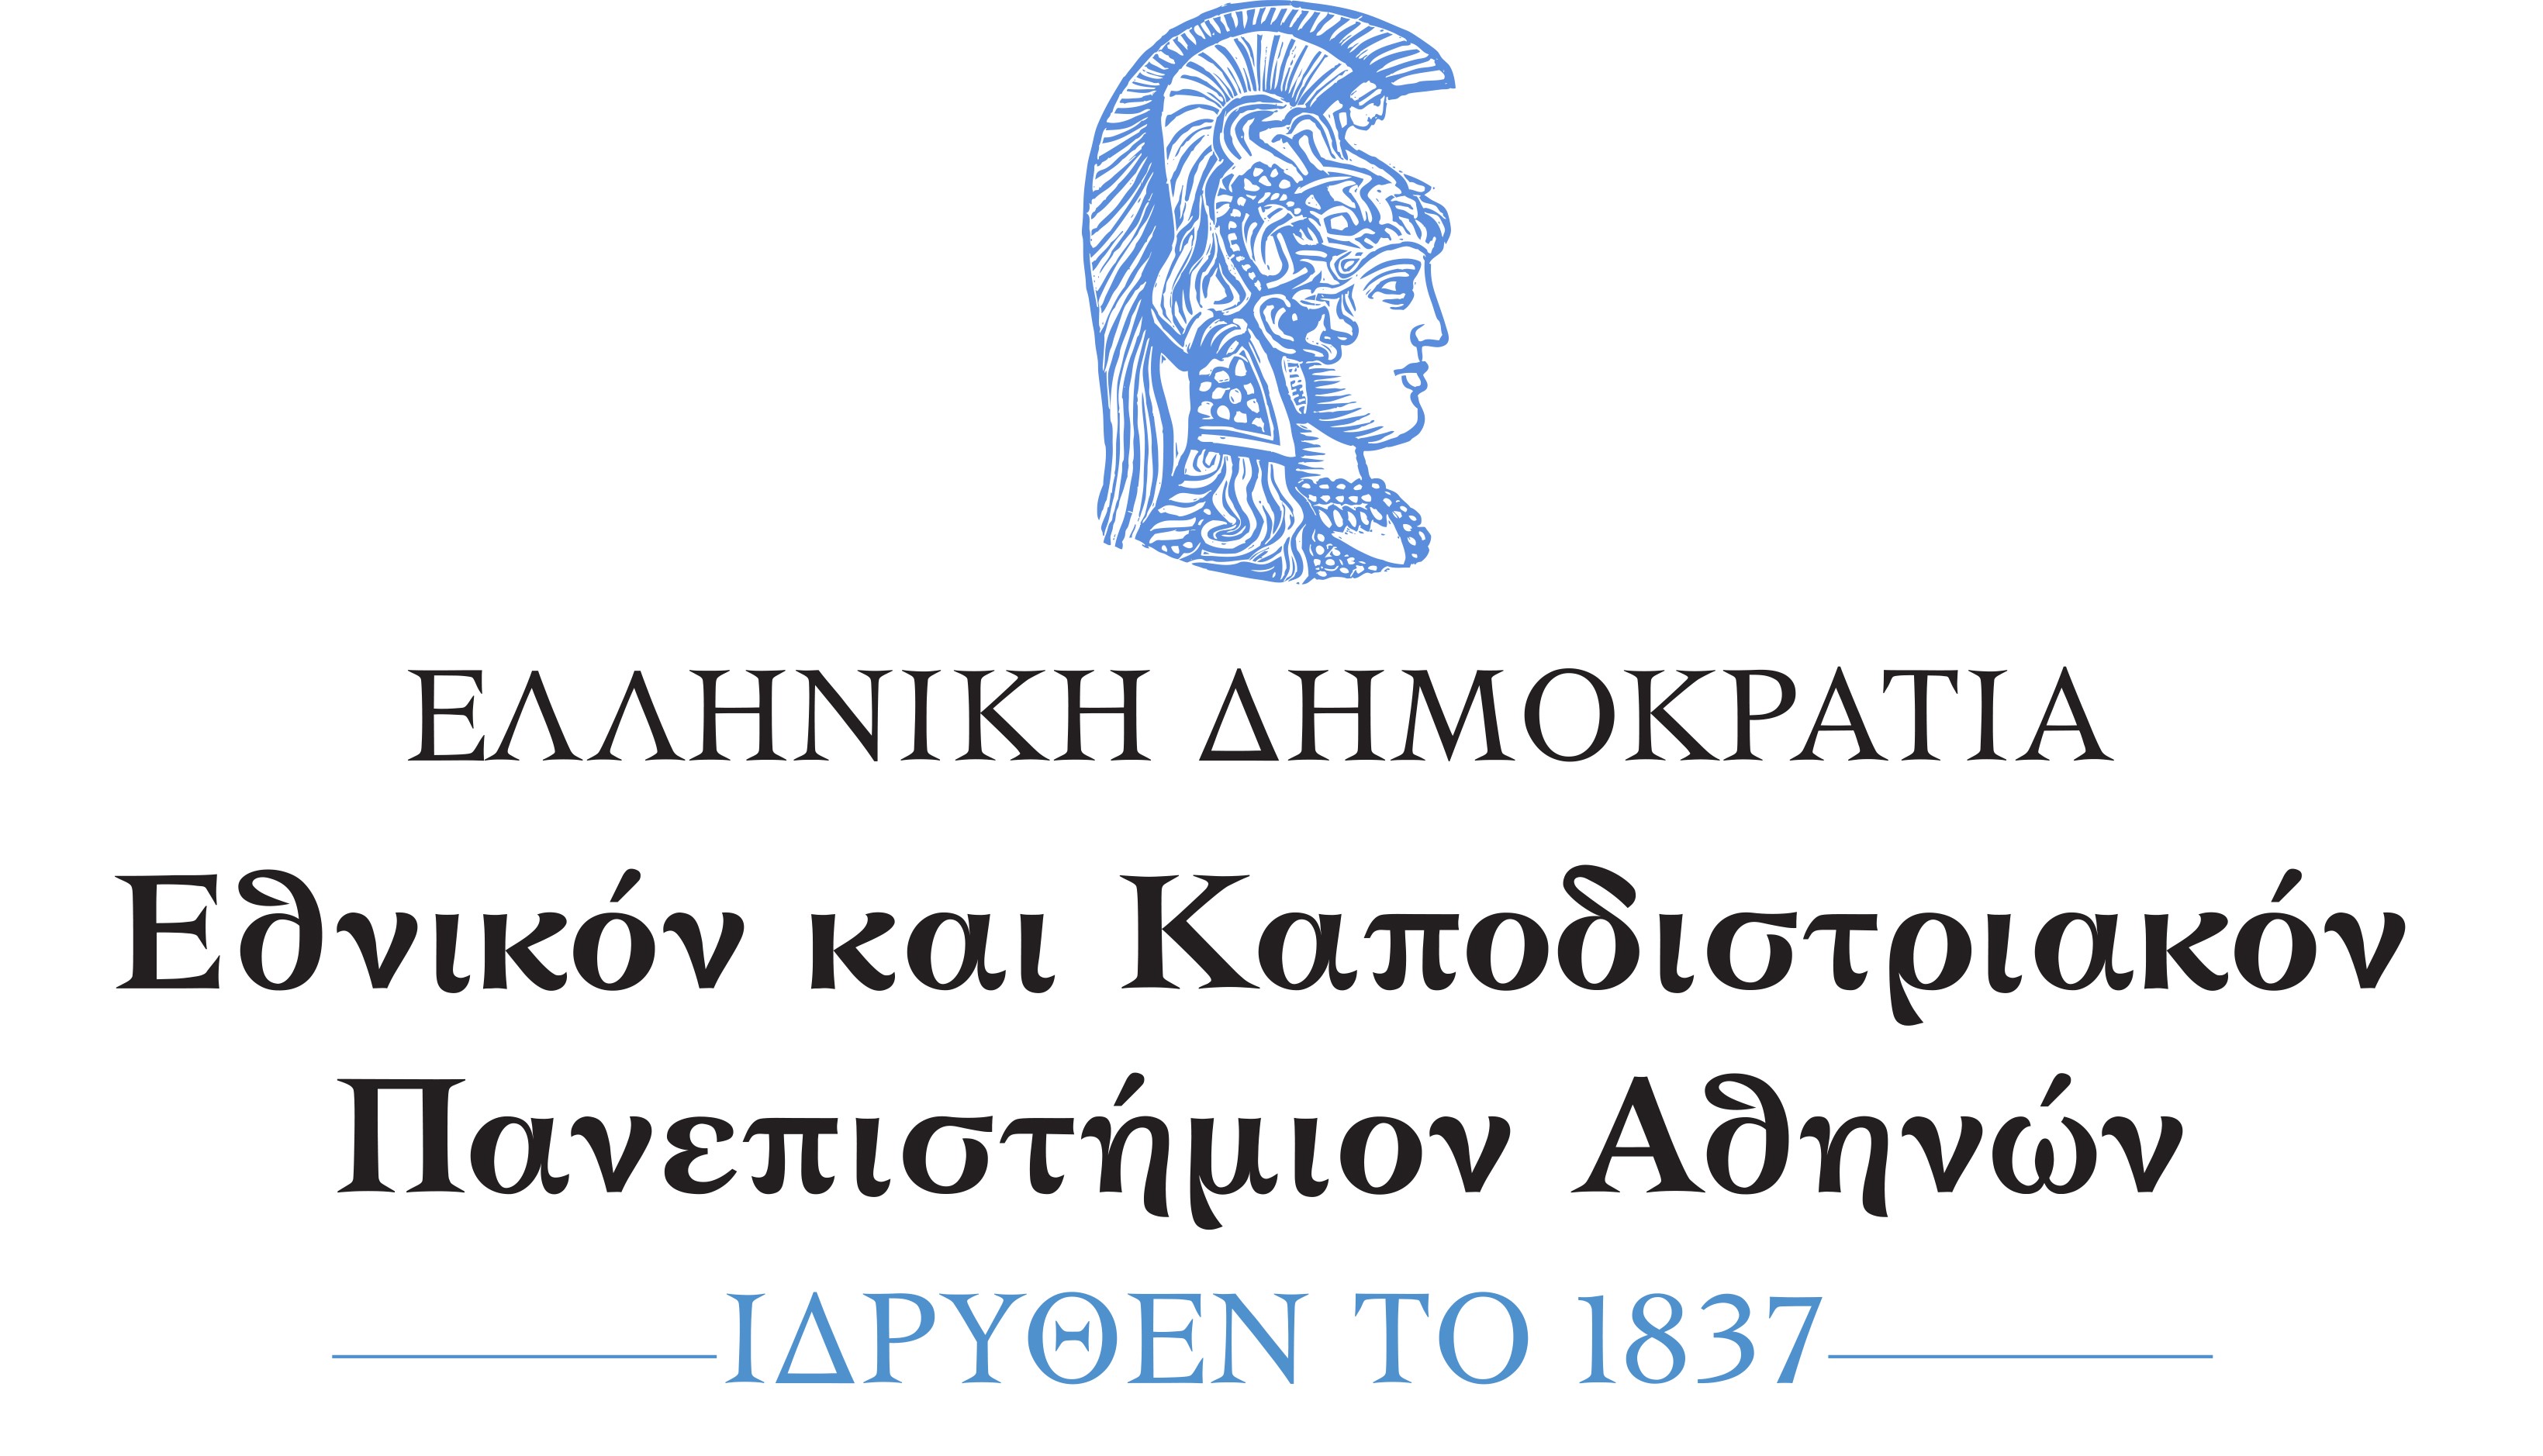 Λογότυπο Εθνικού και Καποδιστριακού Πανεπιστημίου Αθηνών